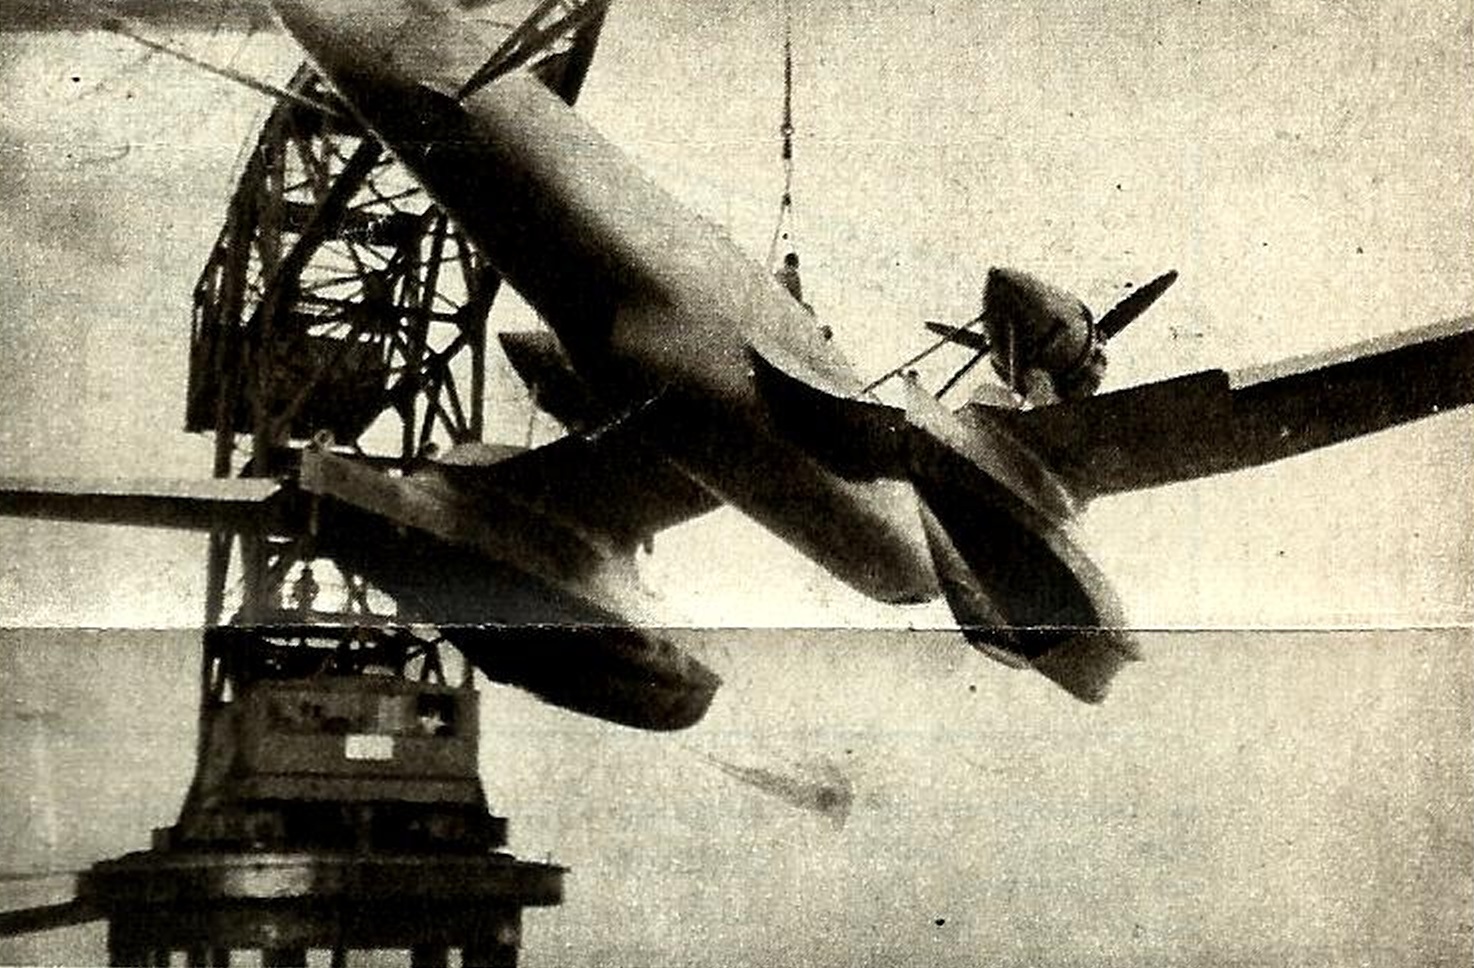 «Боевой и разведывательный гидросамолет». Опытный многоцелевой поплавковый гидросамолет Loire-Nieuport LN-10. Франция Часть 1